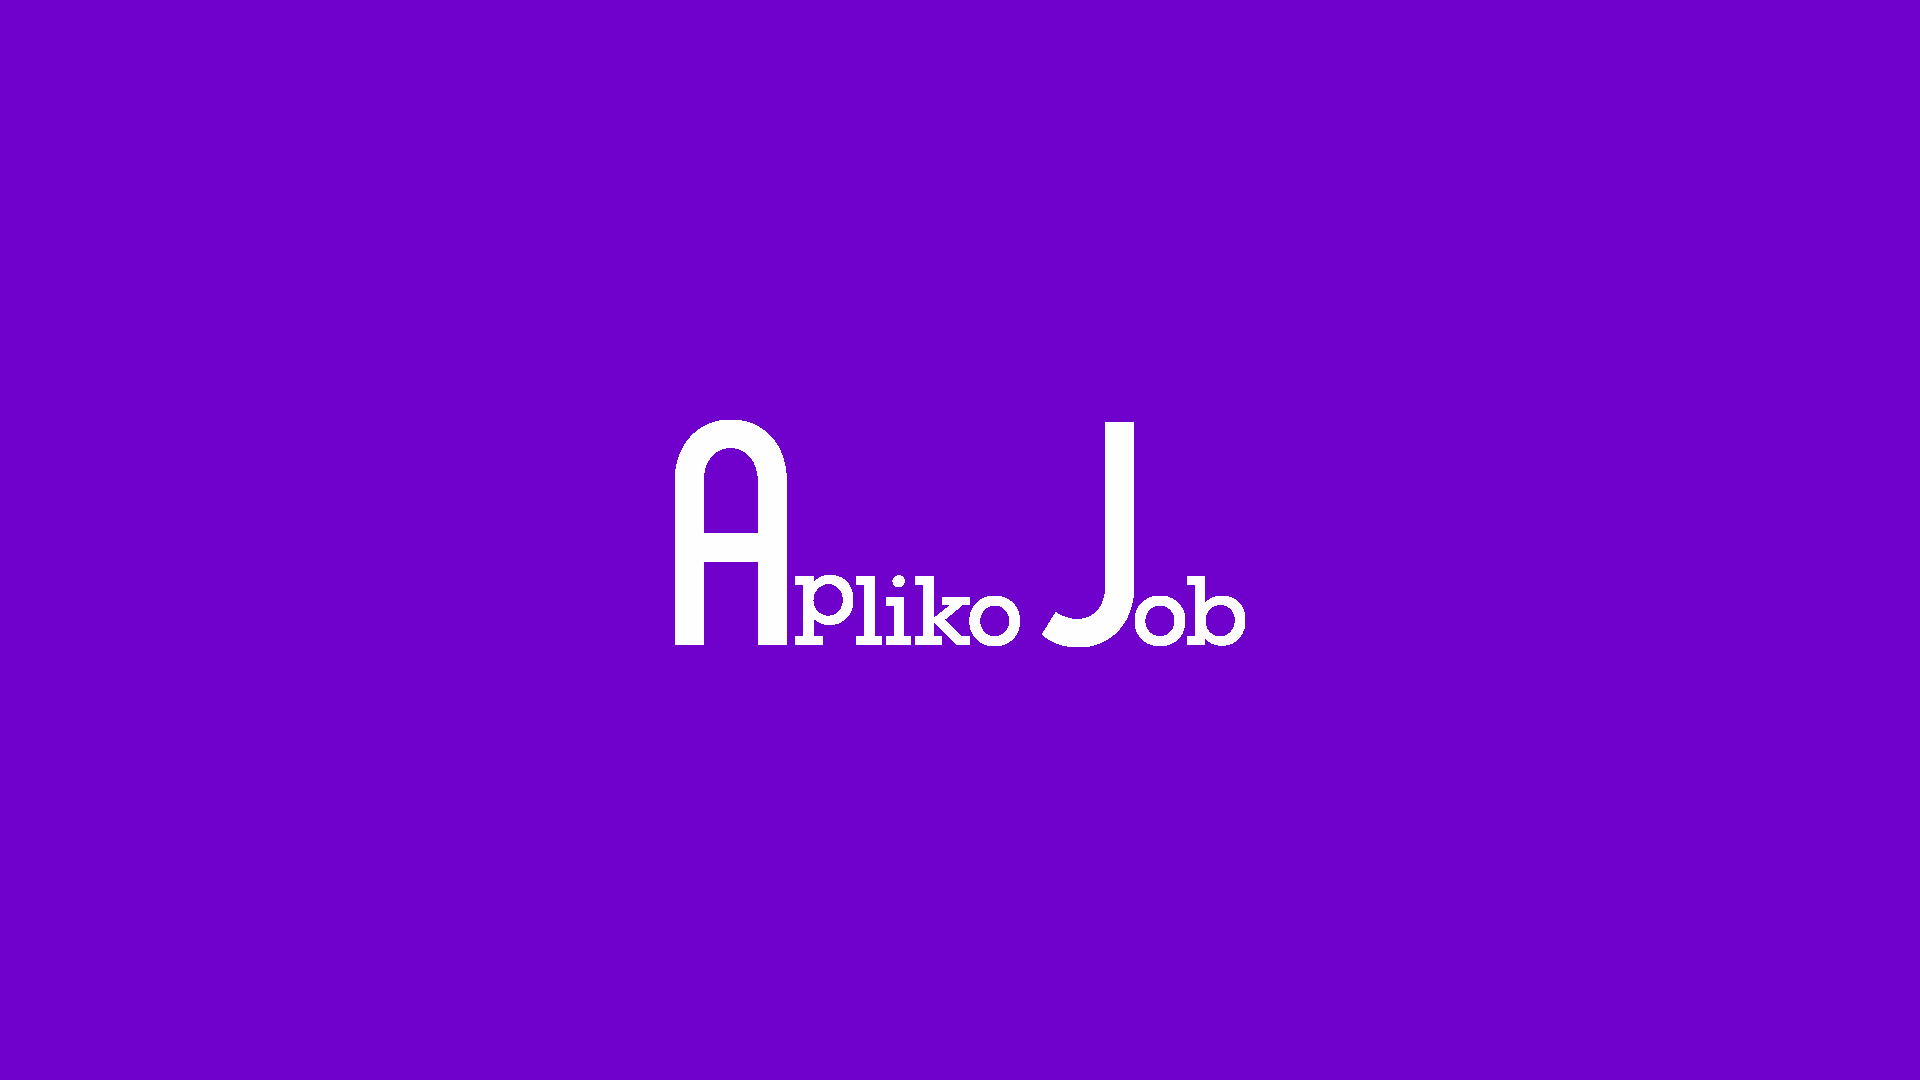 AplikoJob helps you with your job applications!